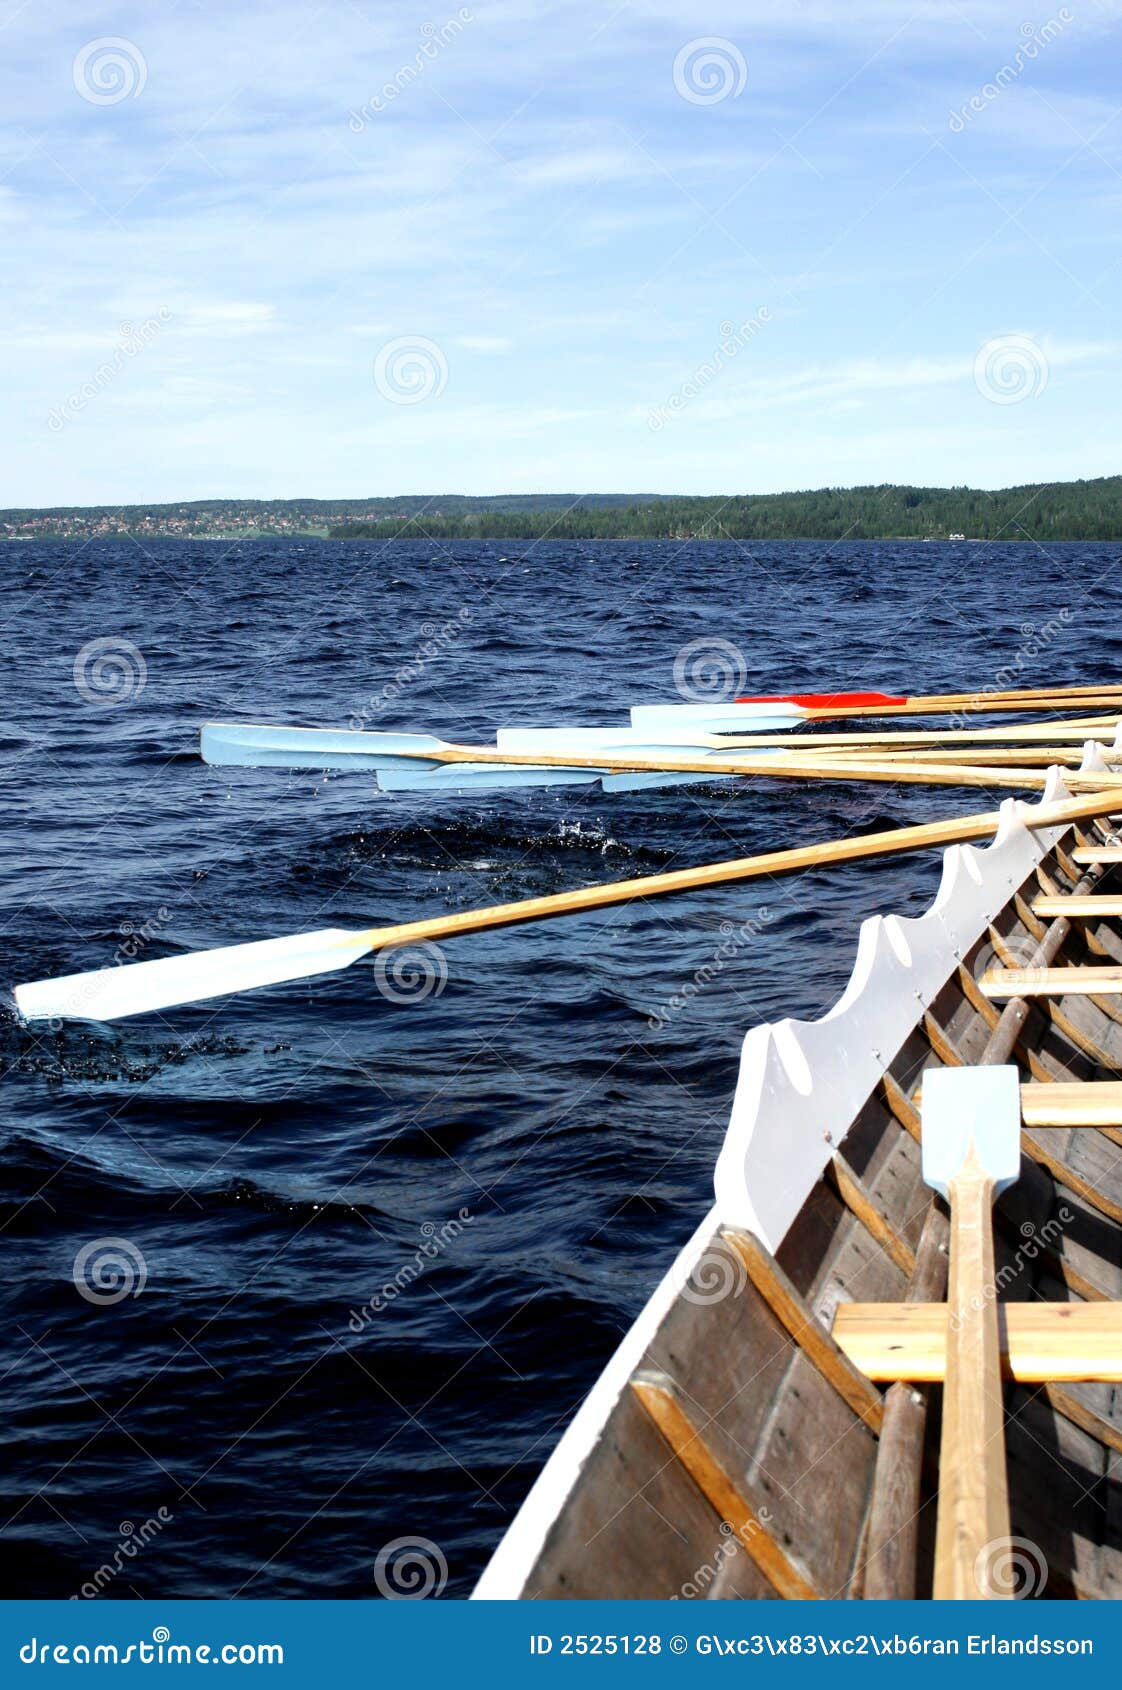 working oars